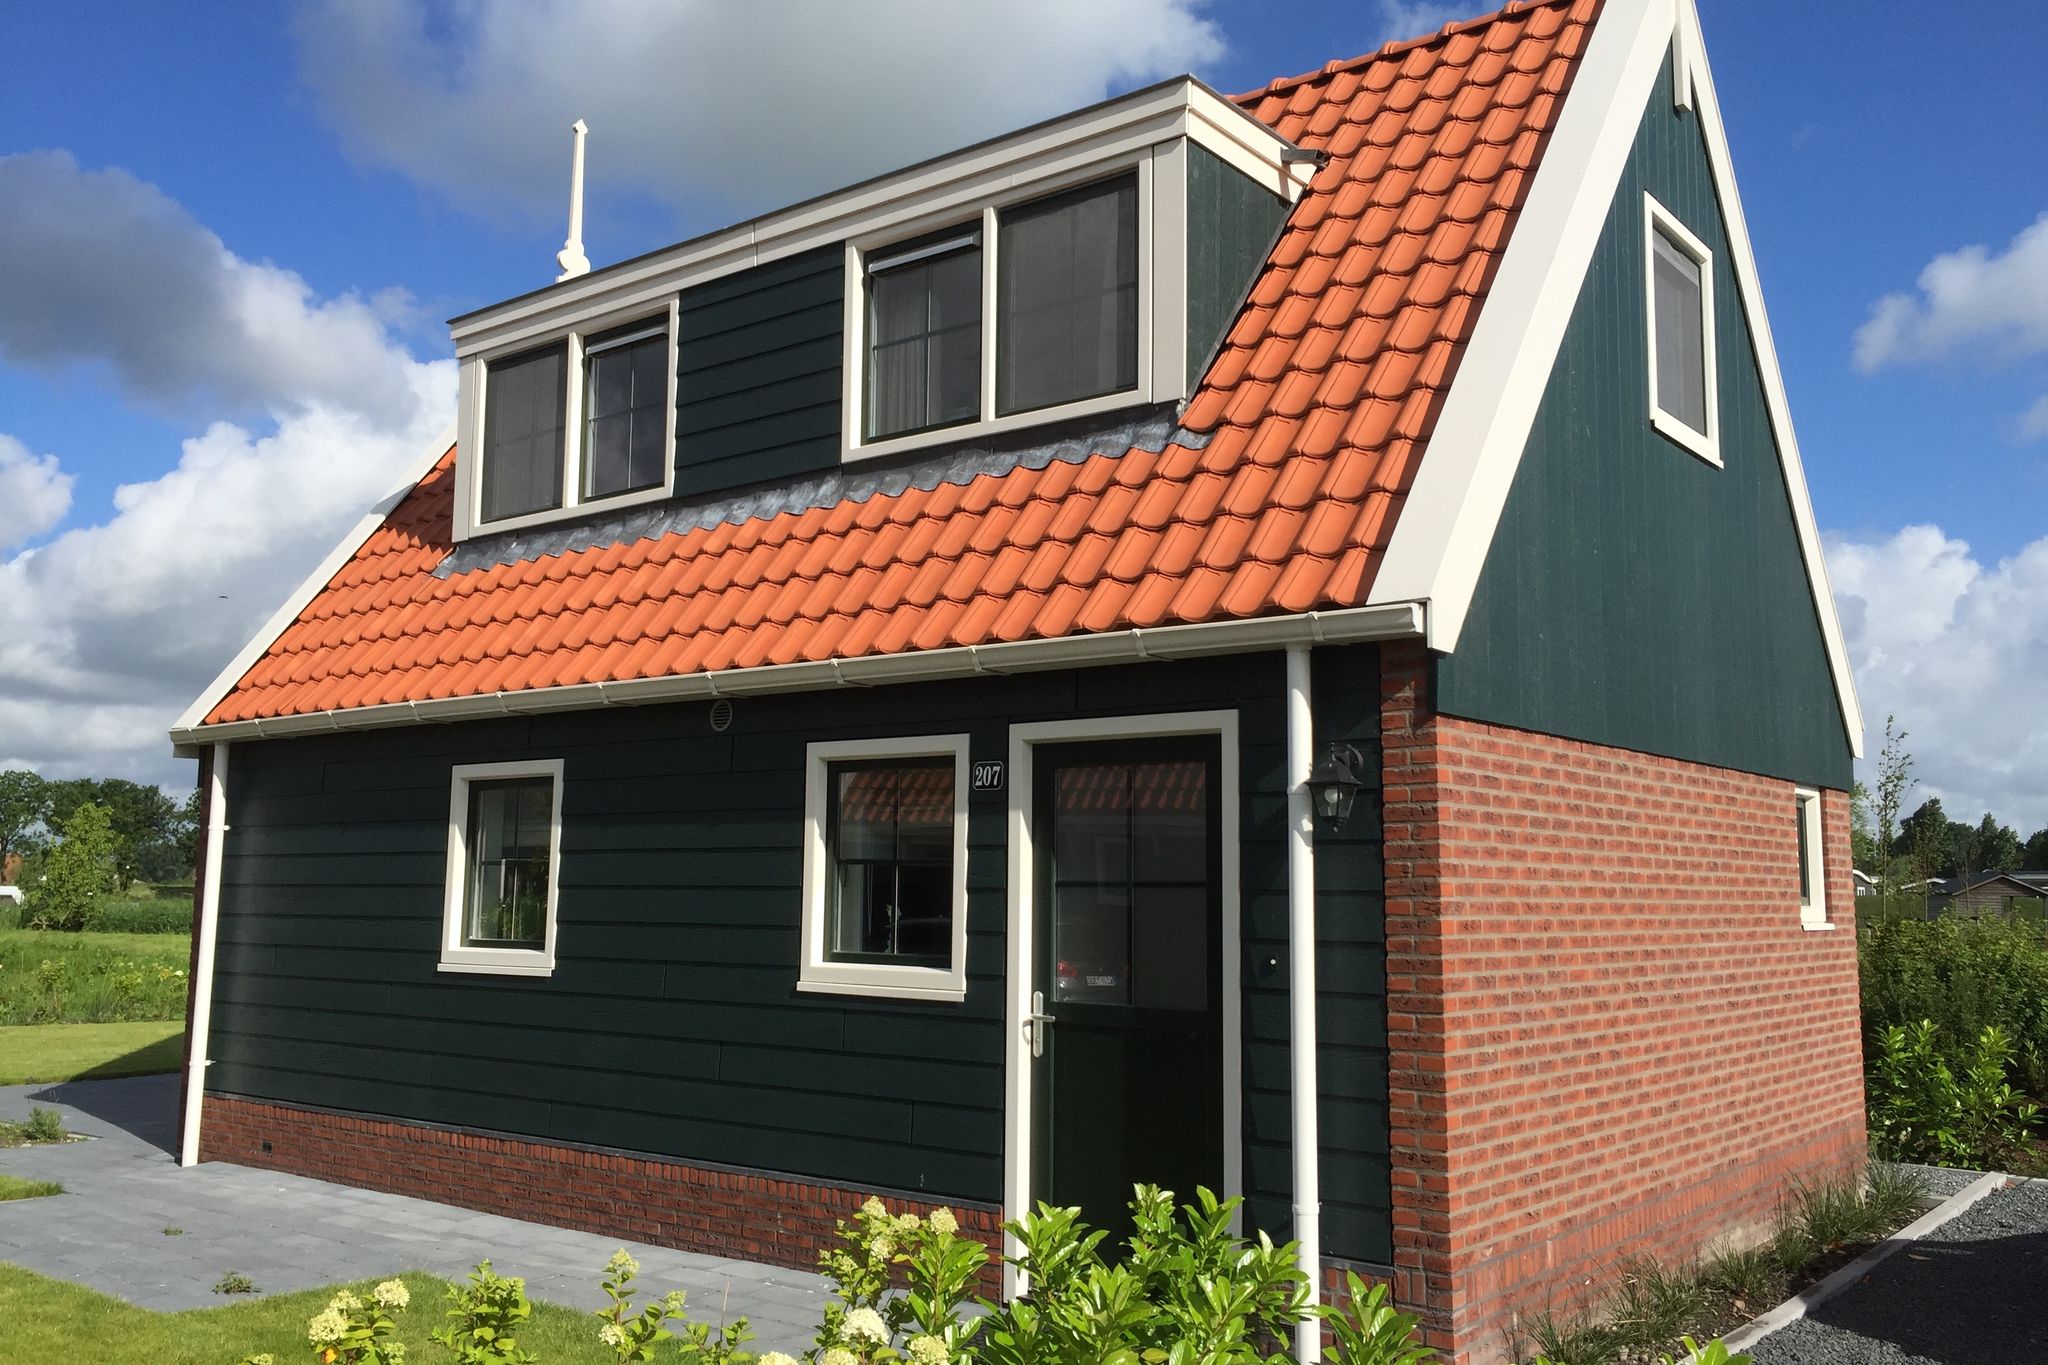 Ferienhaus 15 km von Alkmaar entfernt